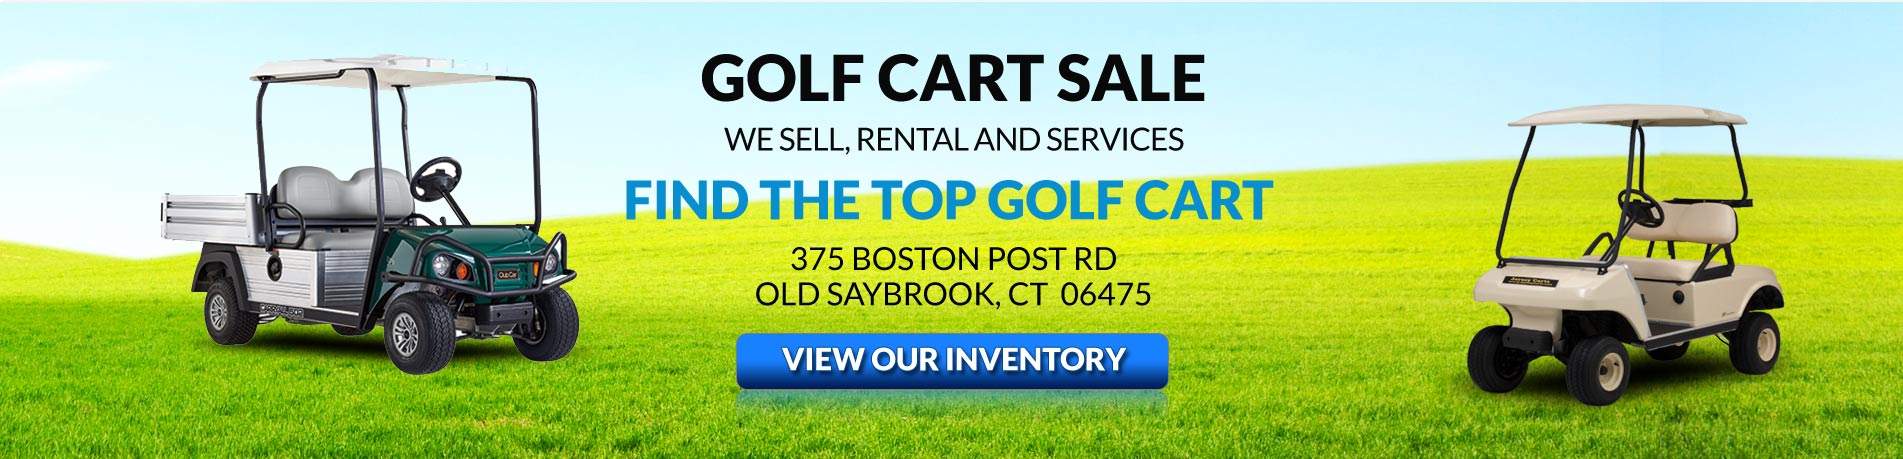 Golf Cart Sale